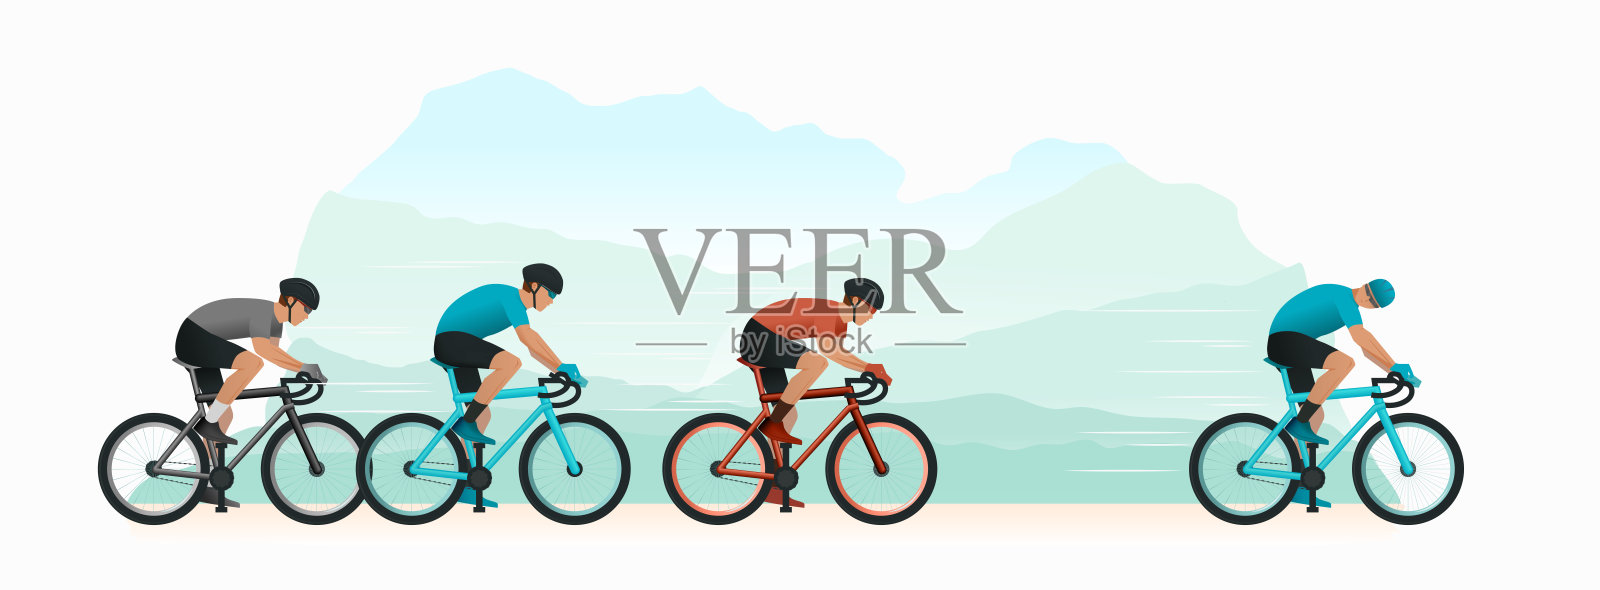 在自然界中循环。骑自行车的人追赶比赛中的领先者。骑自行车的人回头看着追赶他的人。体育活动设计元素图片